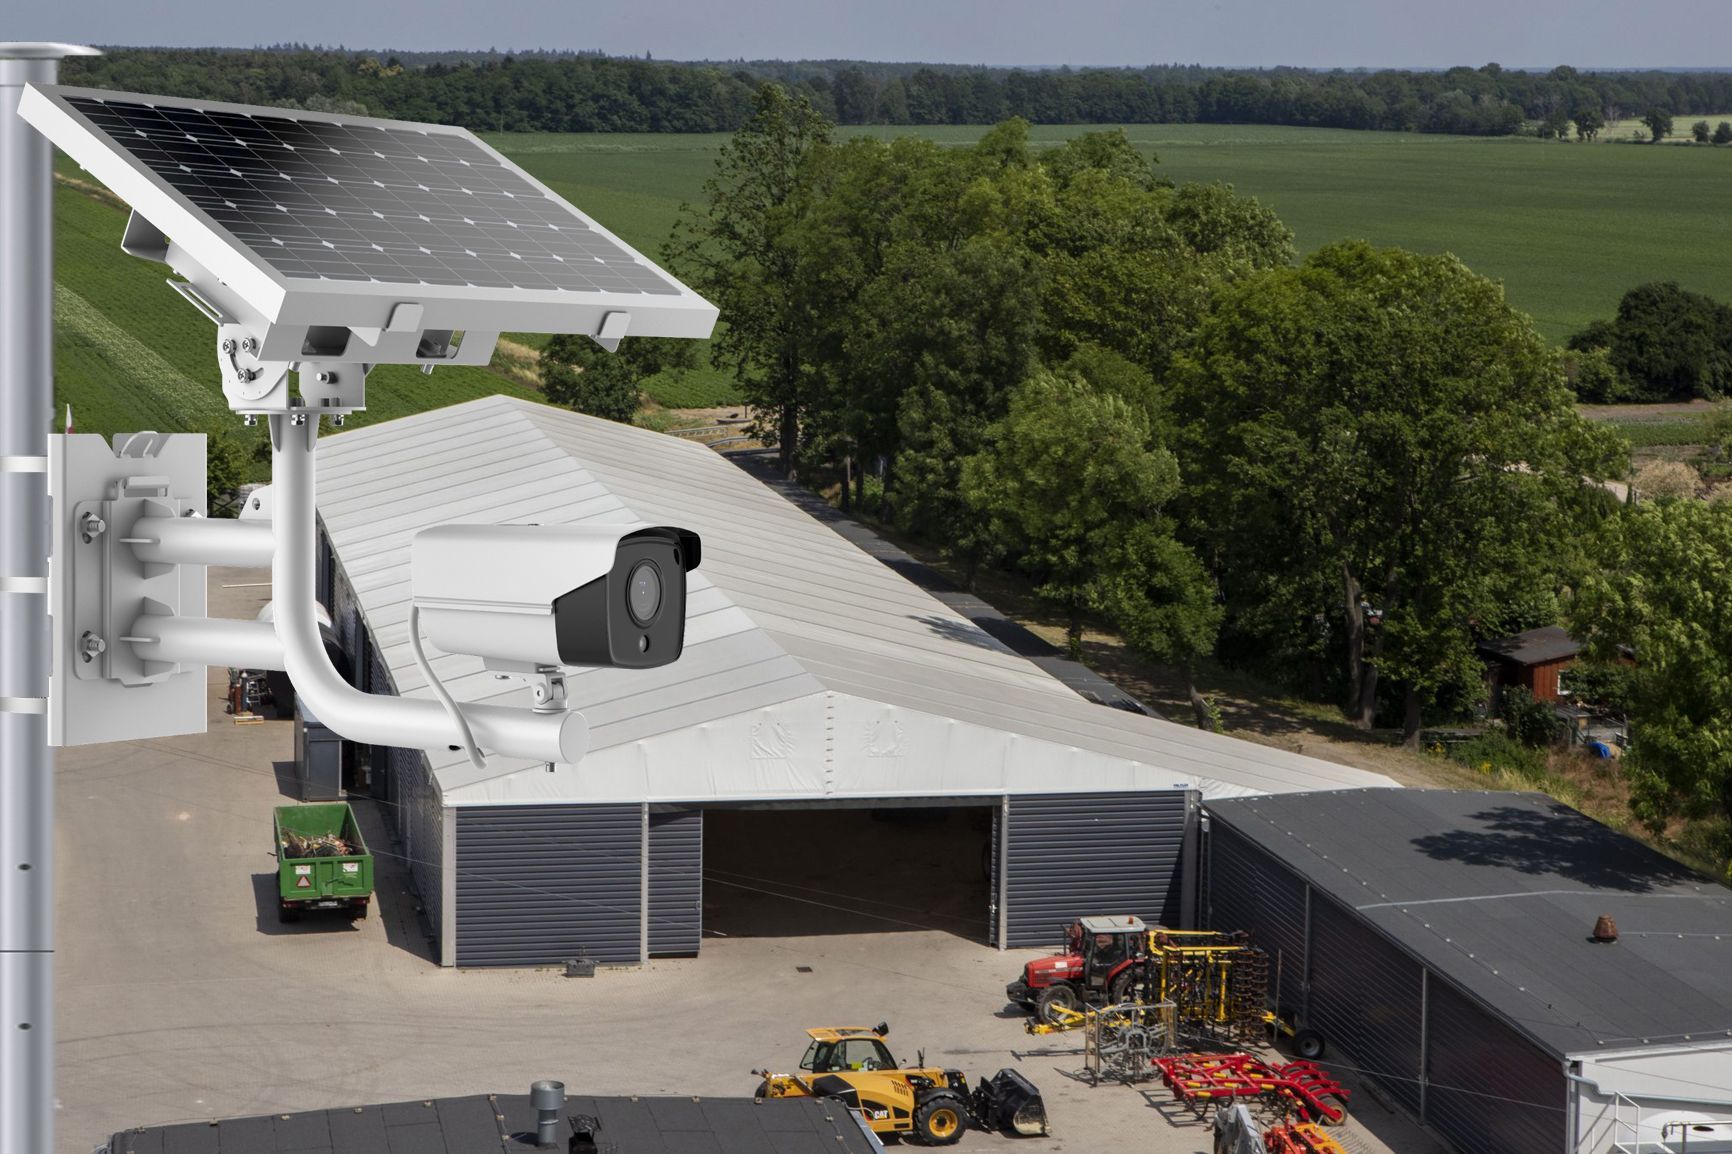 Bâtiment agricole vu du ciel et protété par une caméra photovoltaïque